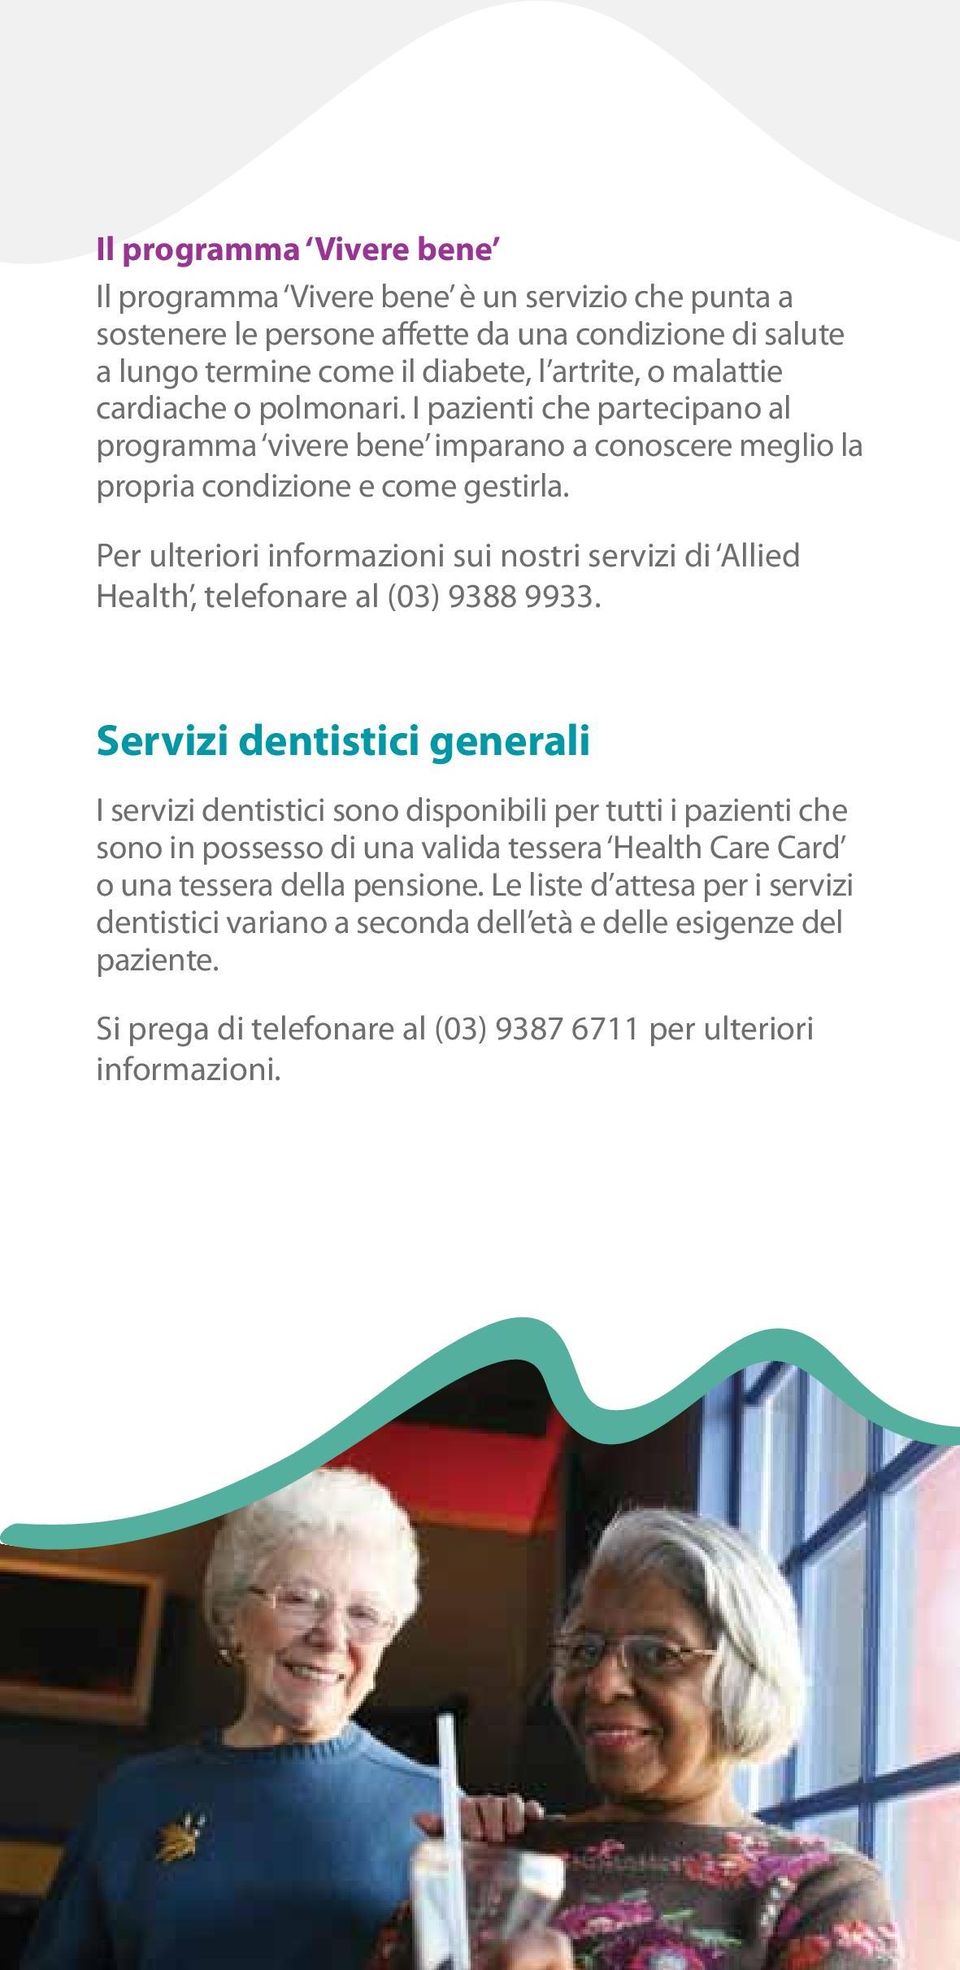 Per ulteriori informazioni sui nostri servizi di Allied Health, telefonare al (03) 9388 9933.